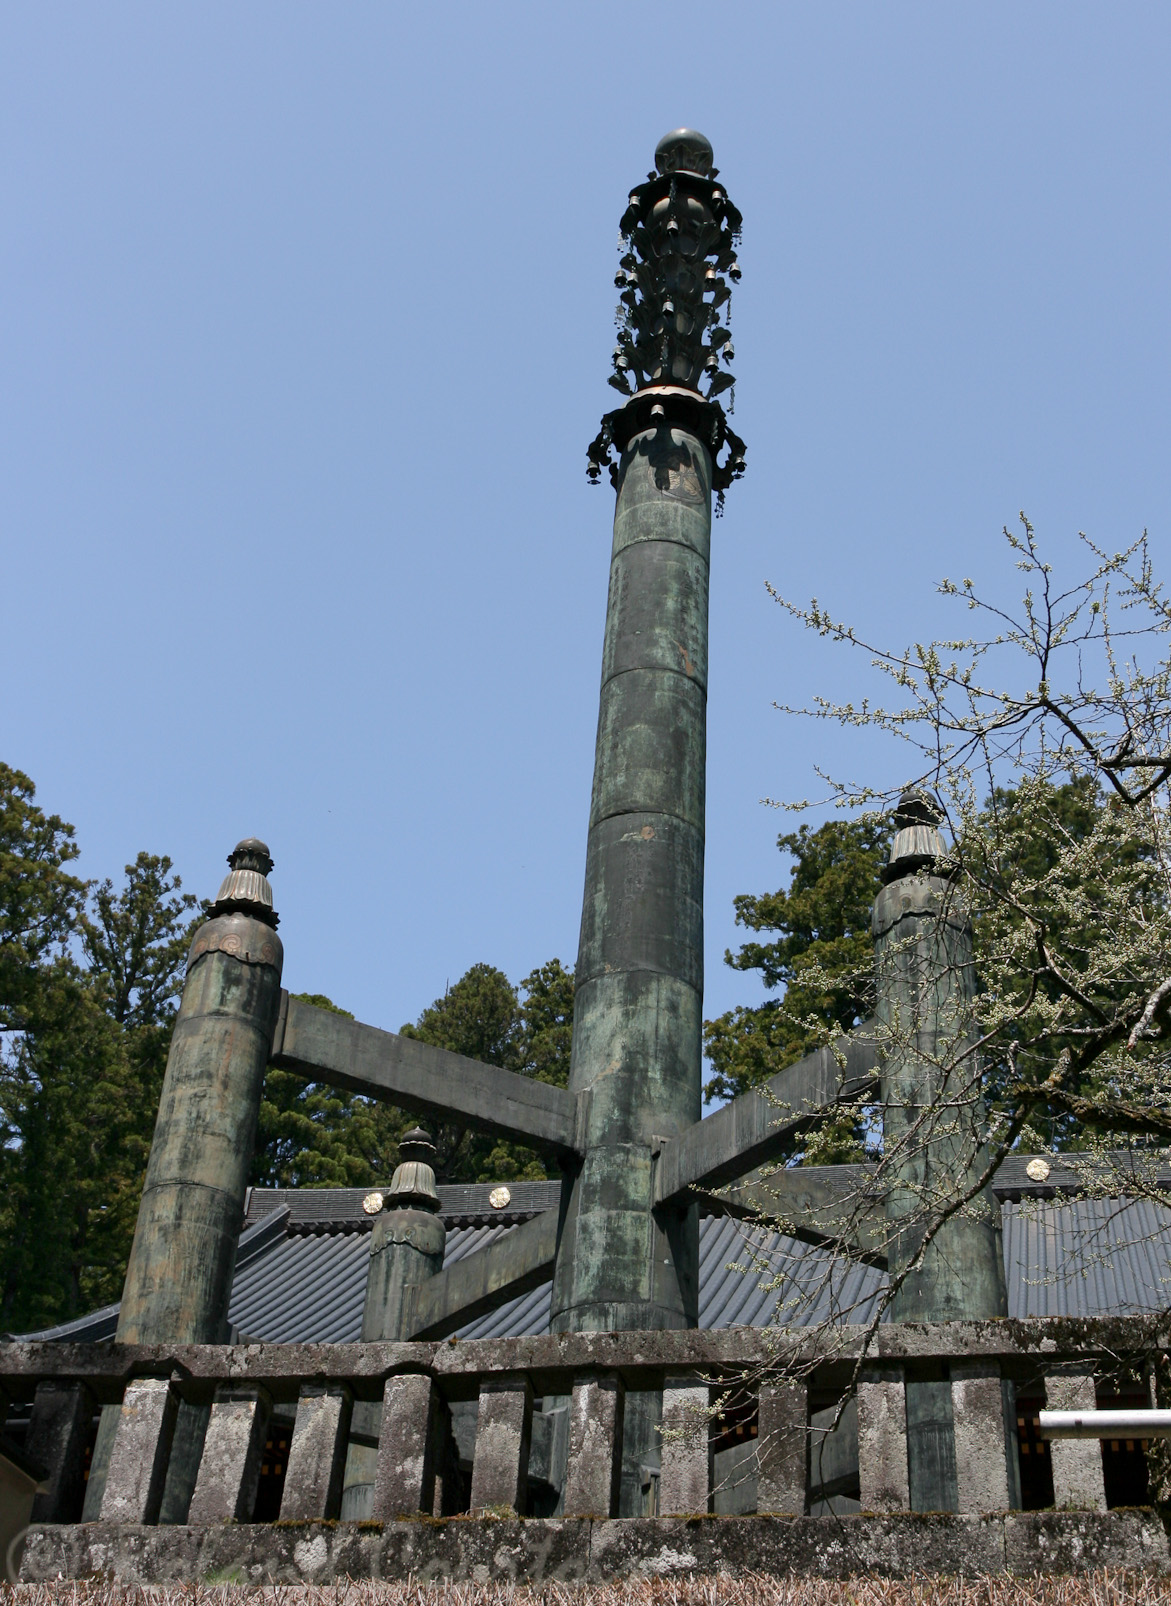 Sanbutsu-do et son Sorin-to, pilier en bronze de 15m de haut. Il contient 1000 volumes de sutras.